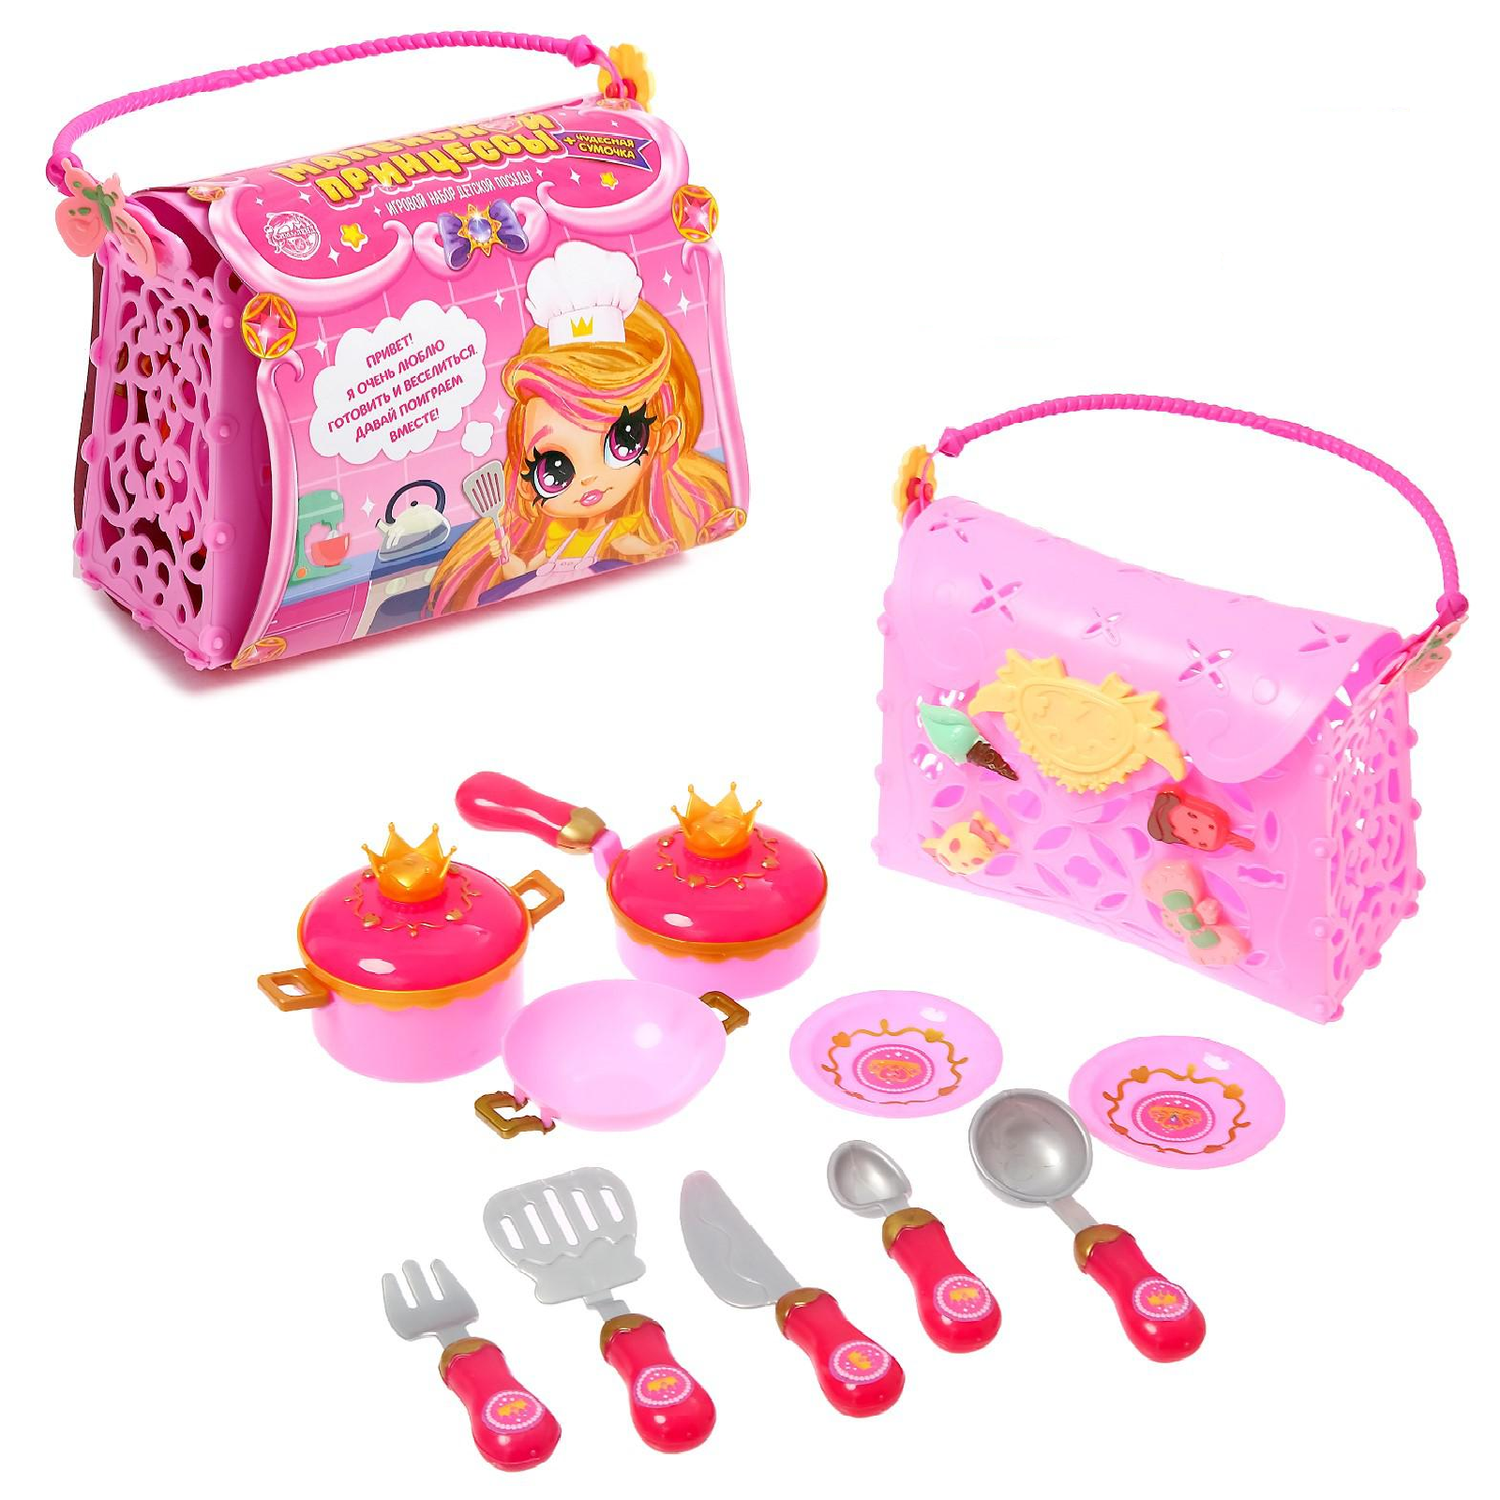 Игровой набор Happy Valley посуда для маленькой принцессы в сумочке - фото 1